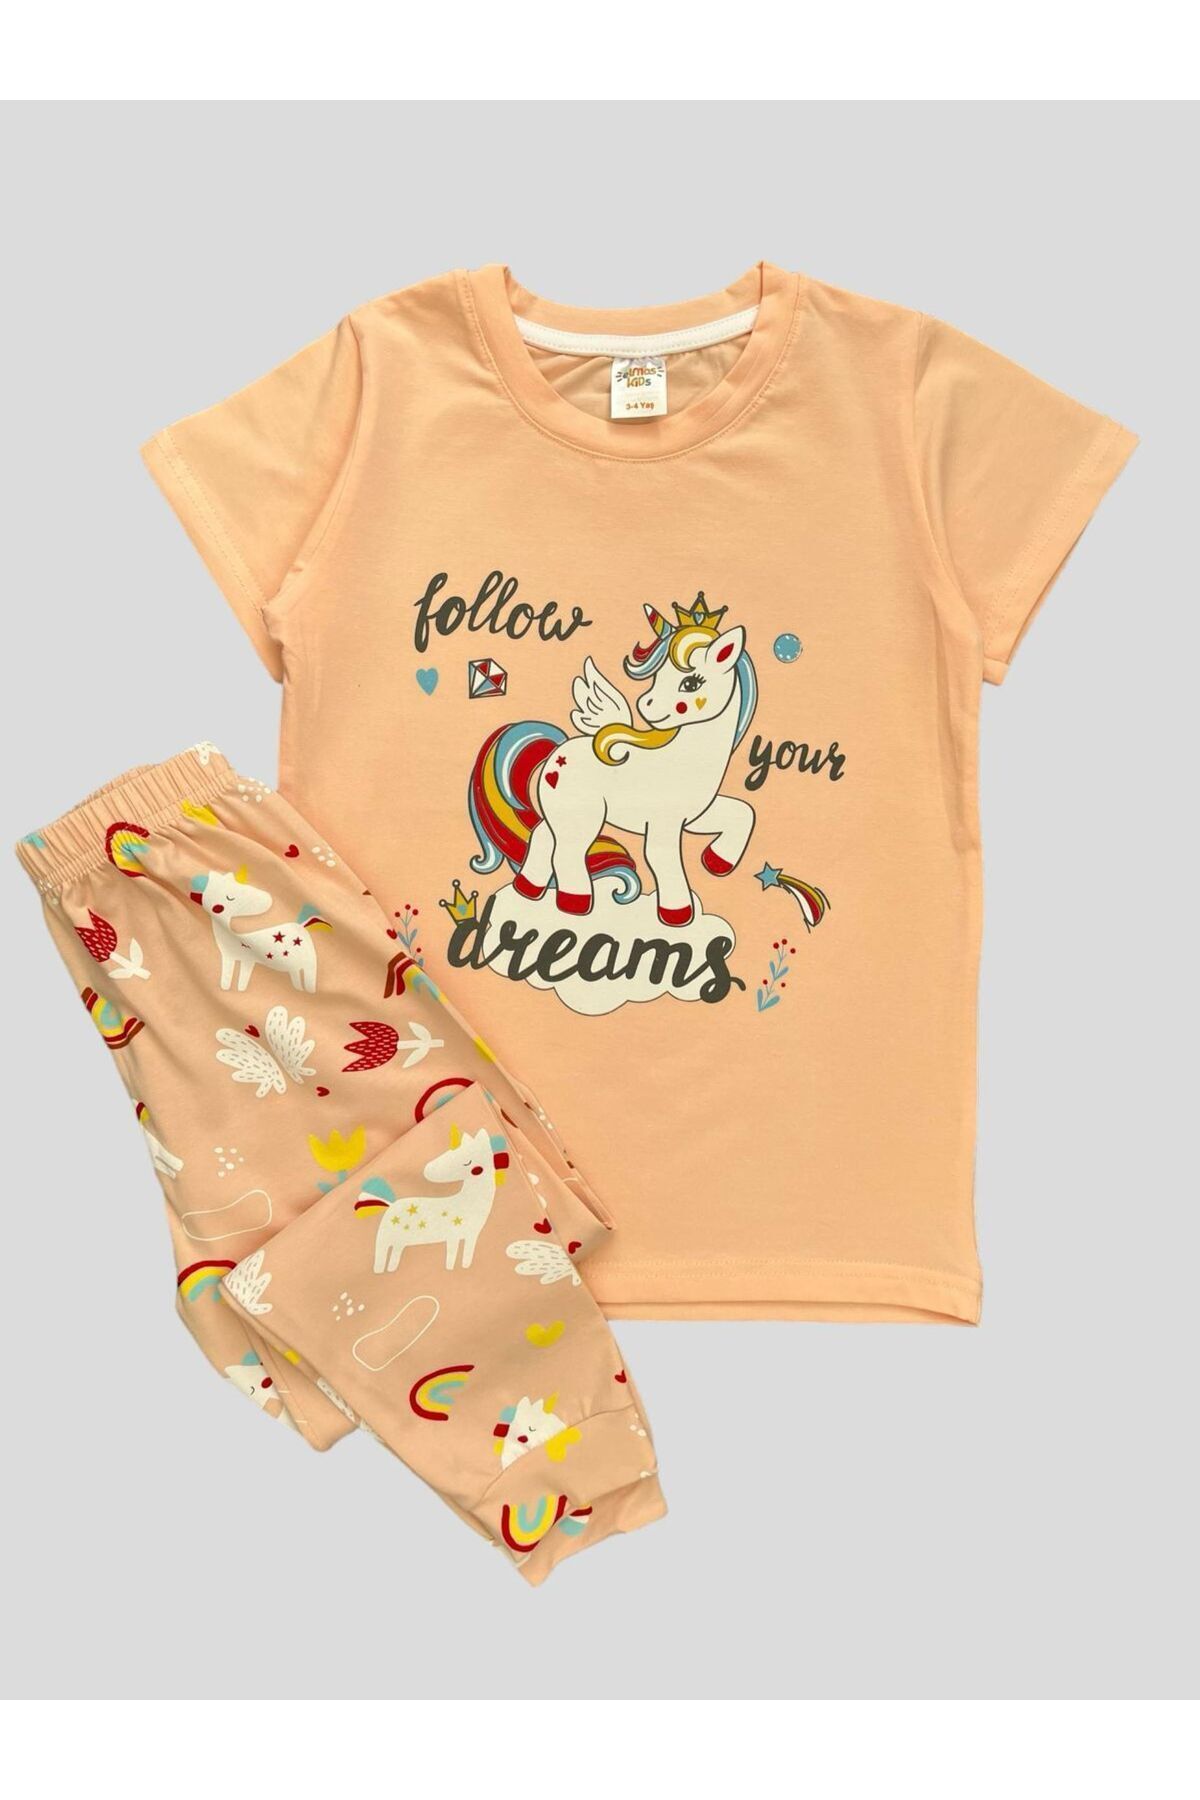 elmas kids Kız Çocuk %100 Pamuklu Unıcorn Gökkuşağı Desenli Kısa Kollu Yazlık Pijama Takımı